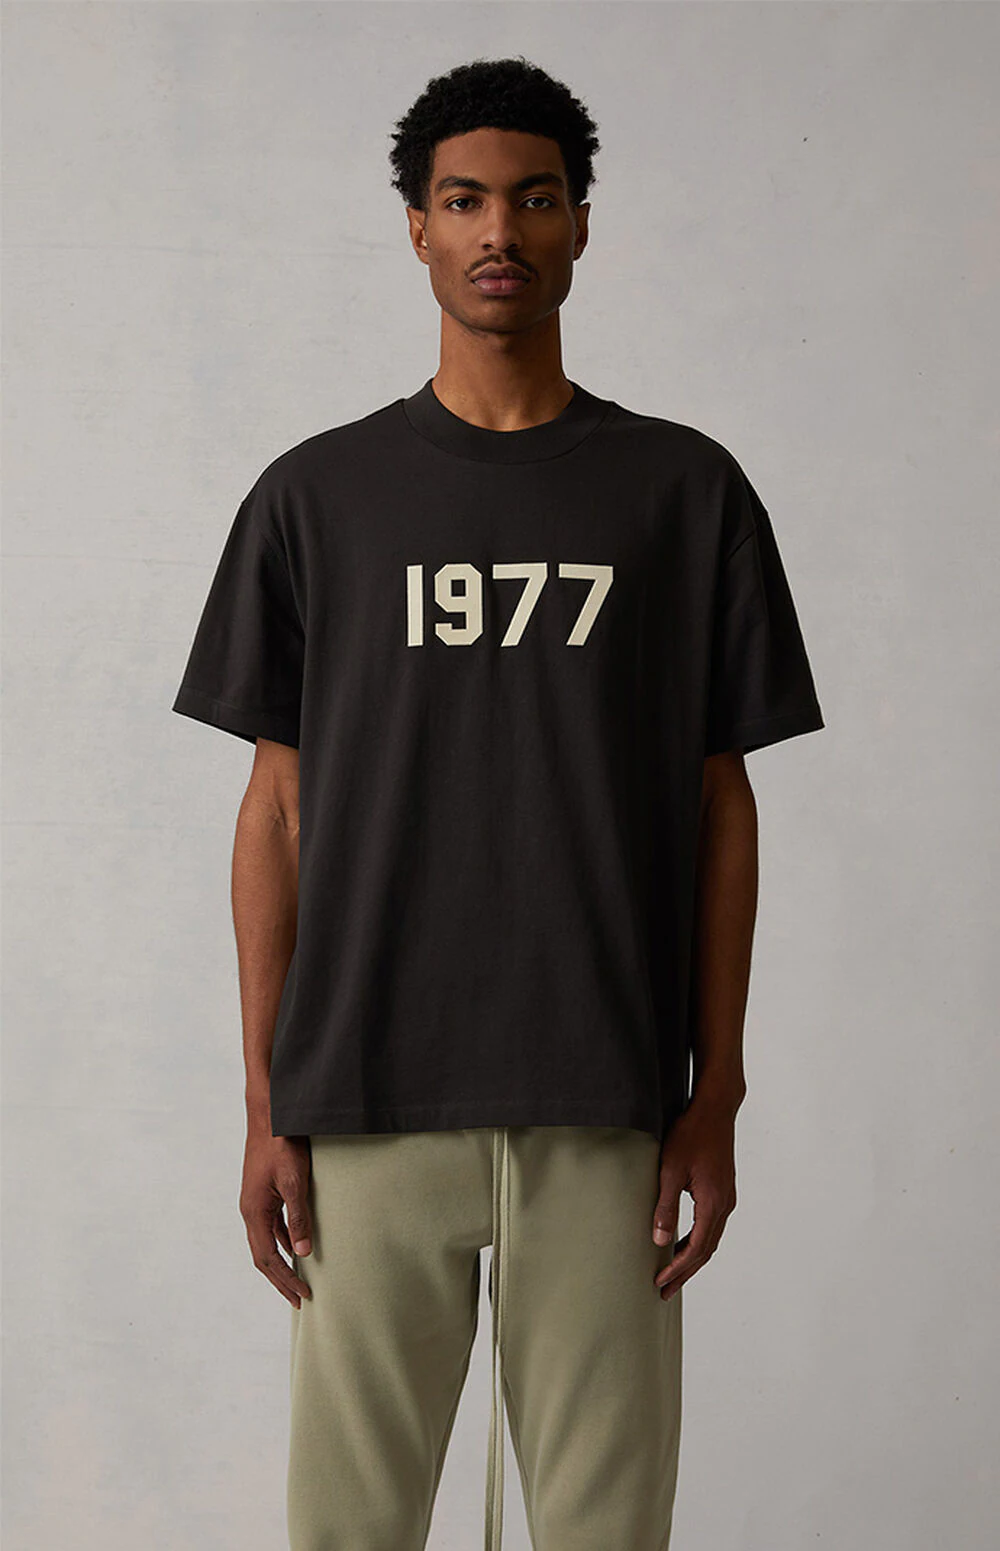 新品 ESSENTIALS Tシャツ1977  L